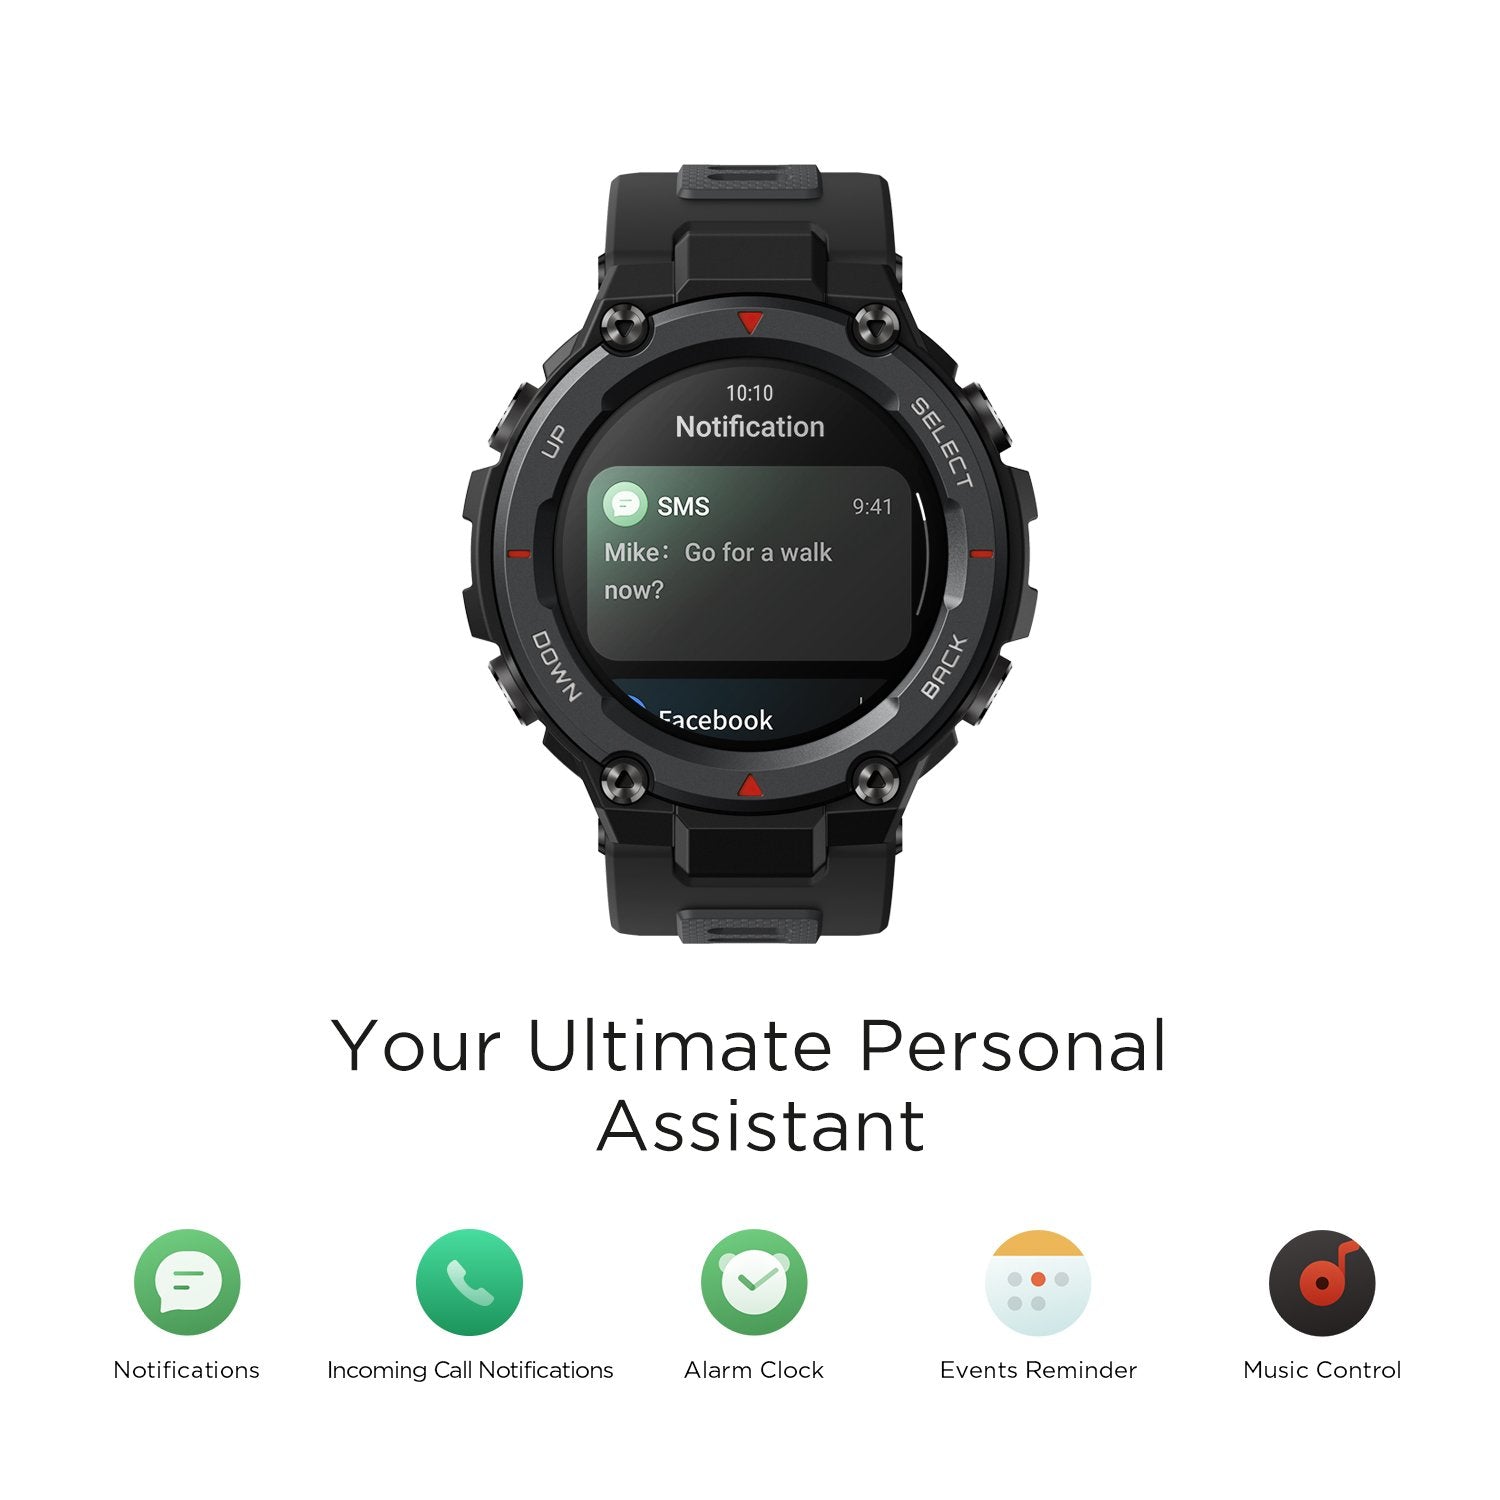 AMAZFIT T-REX PRO Smartwatch-Black